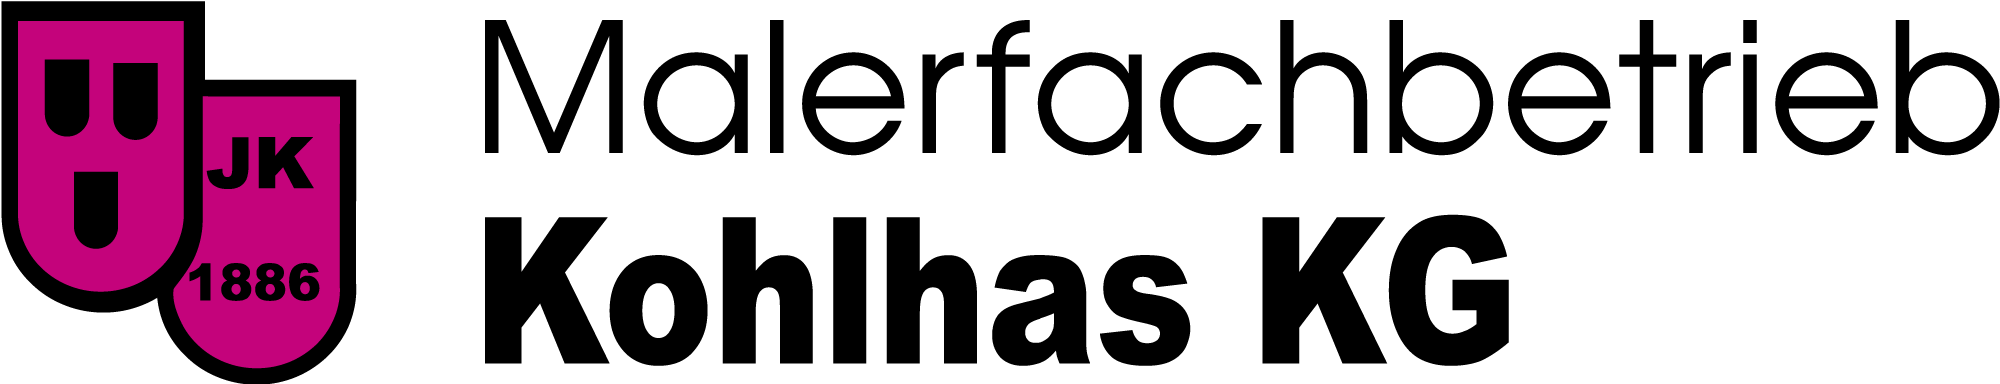 malerkohlhas-logo-web-2000px